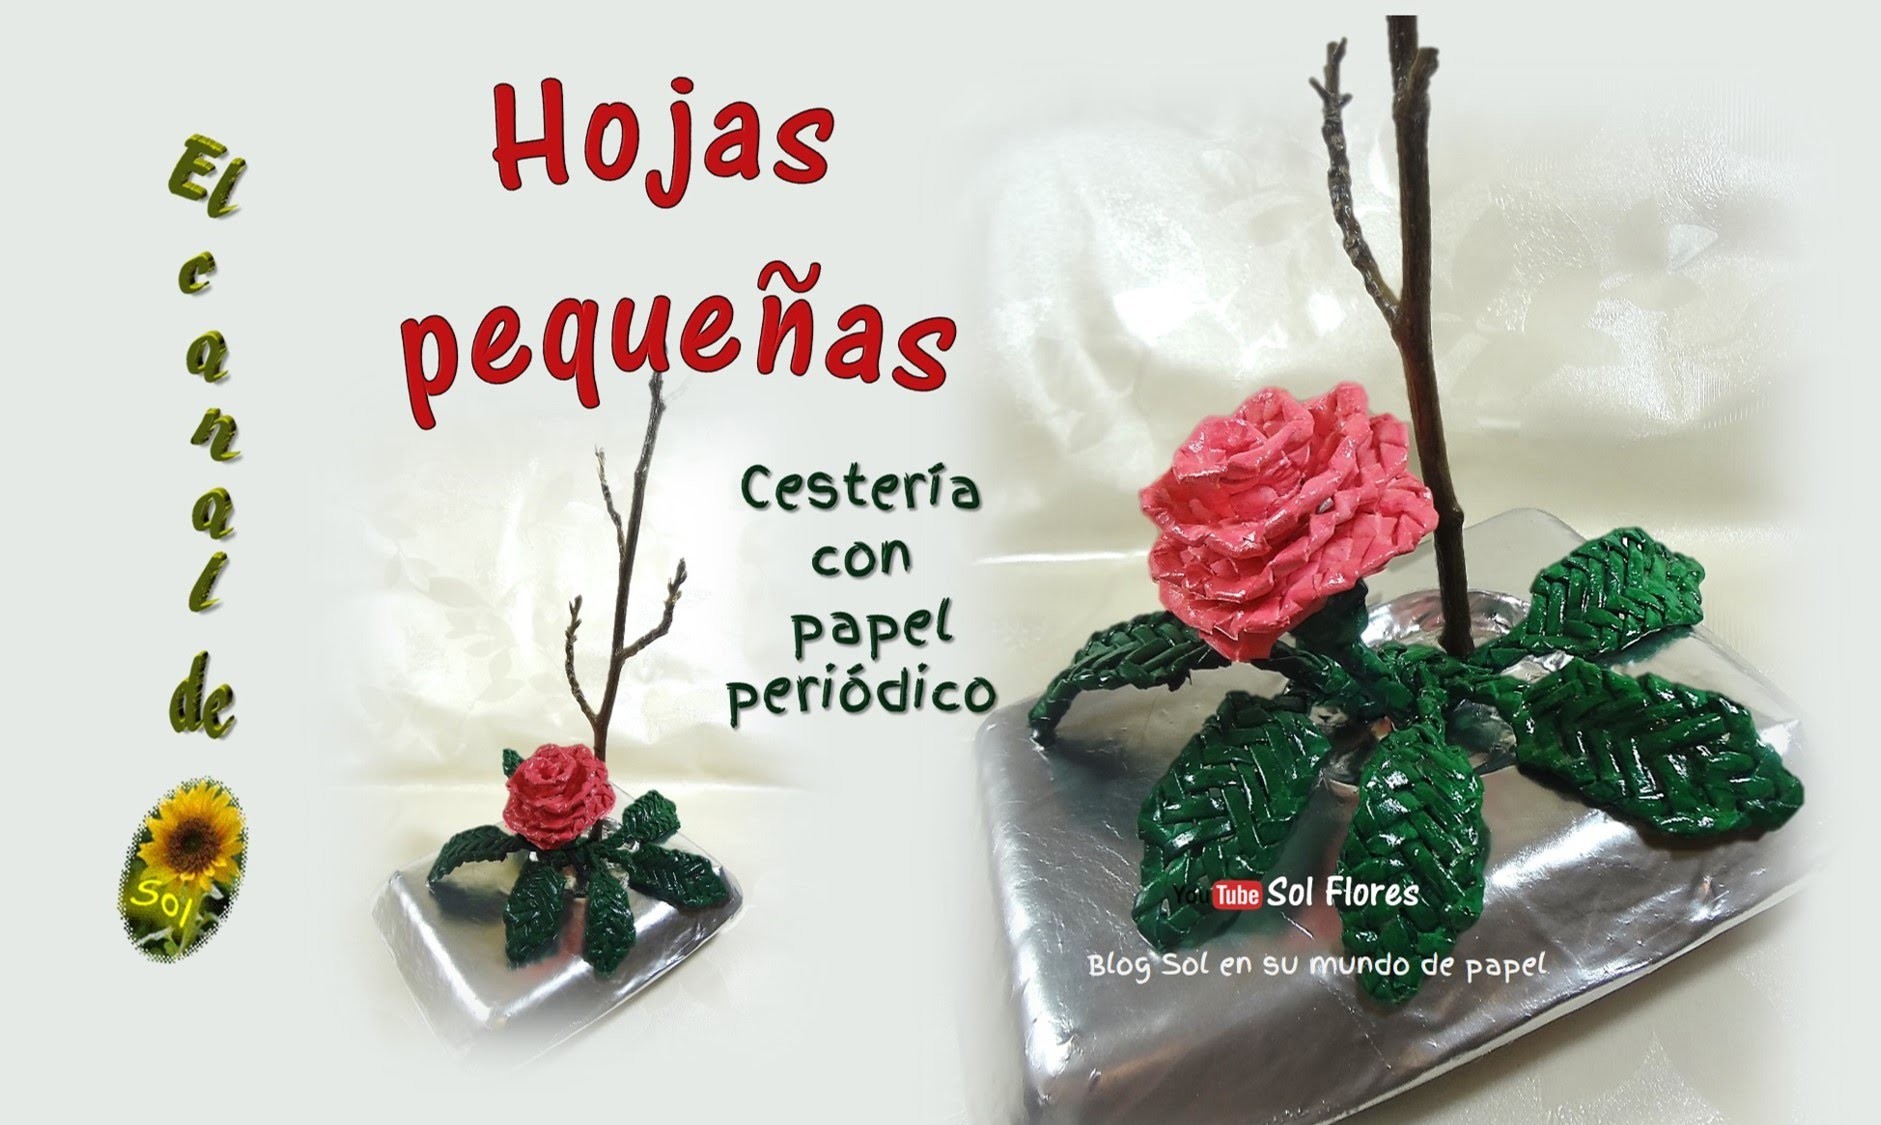 Hojas pequeñas, cestería con papel periódico - small leaves, straw with newspaper